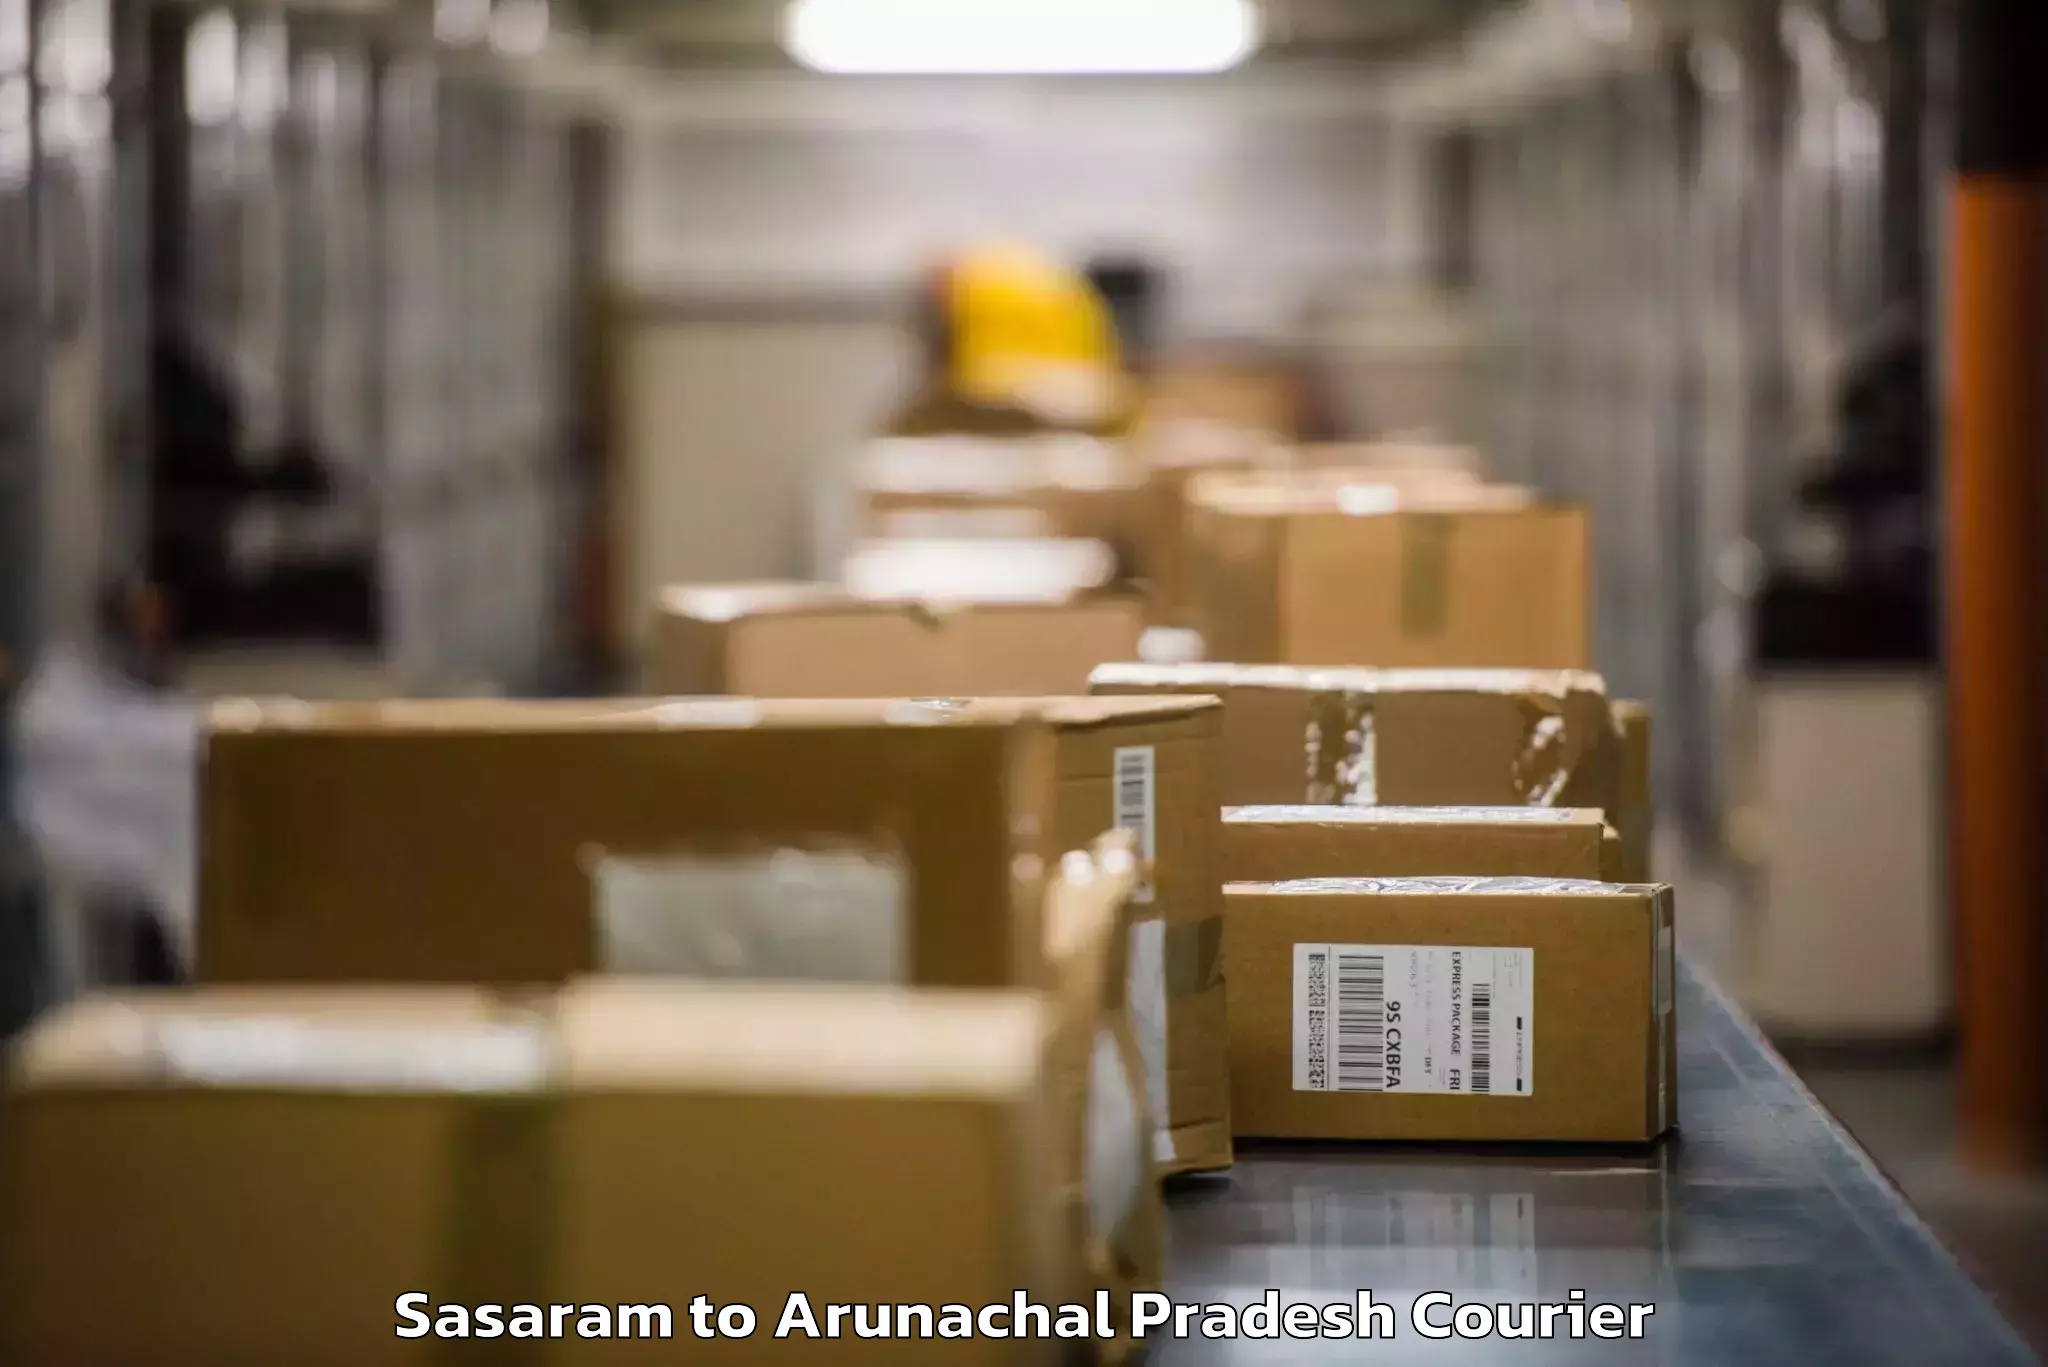 Baggage shipping service Sasaram to Arunachal Pradesh